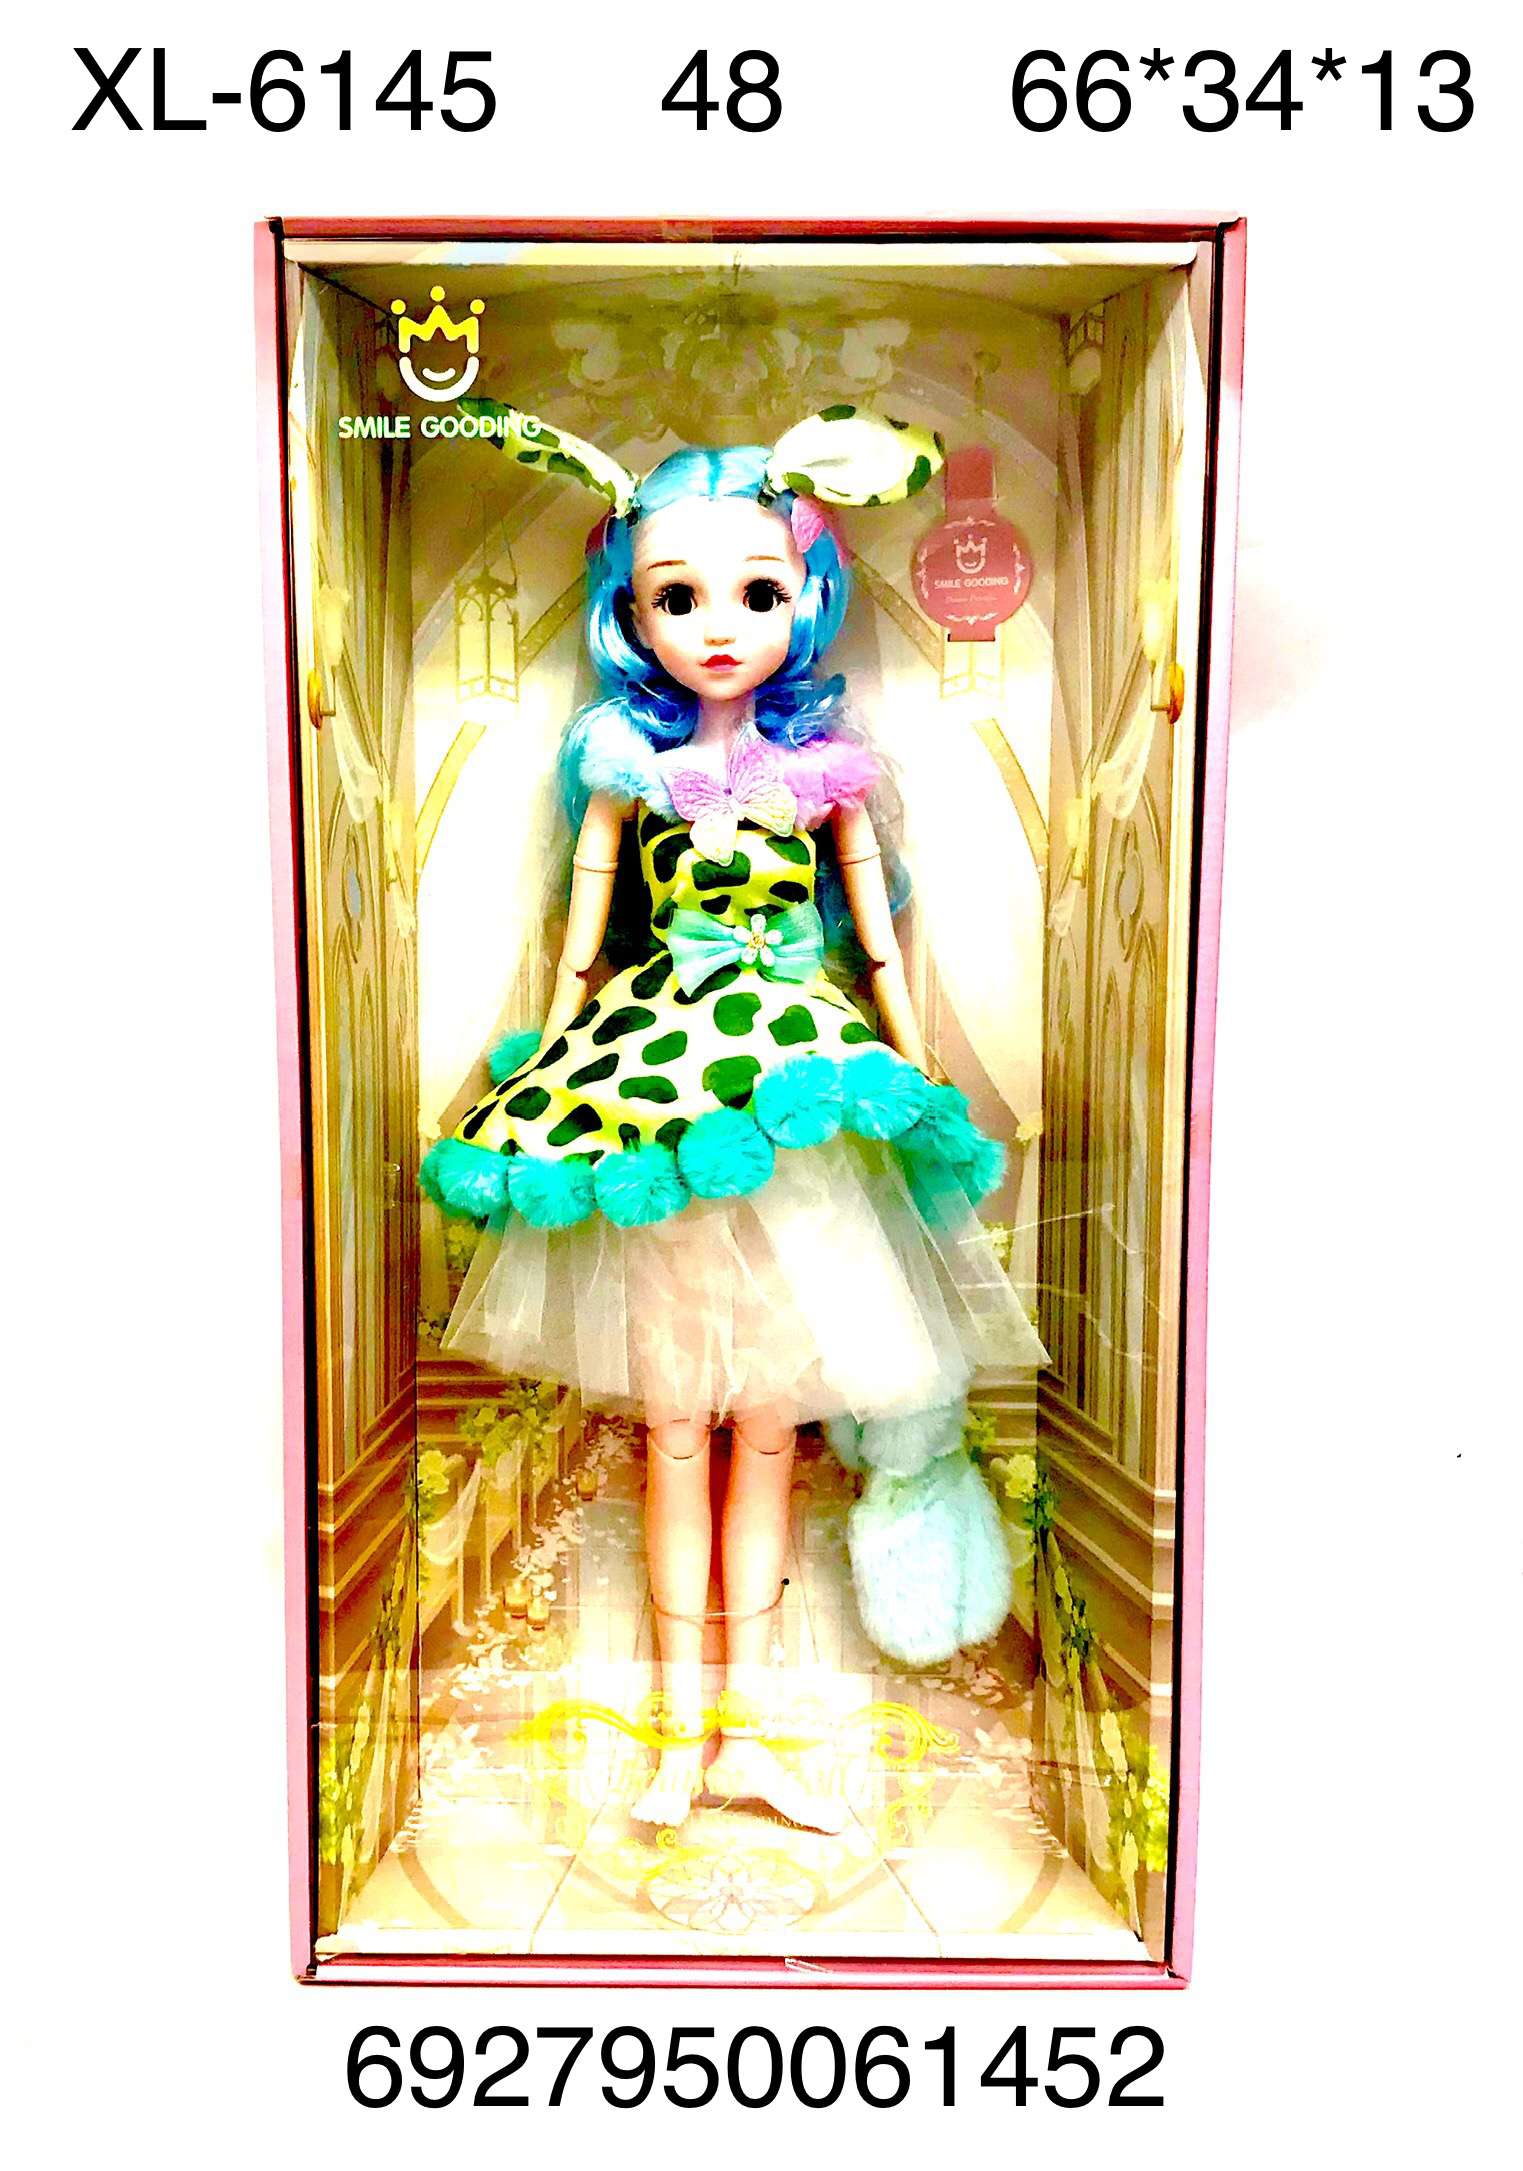 Кукла XL-6145 Smile - Нижнекамск 